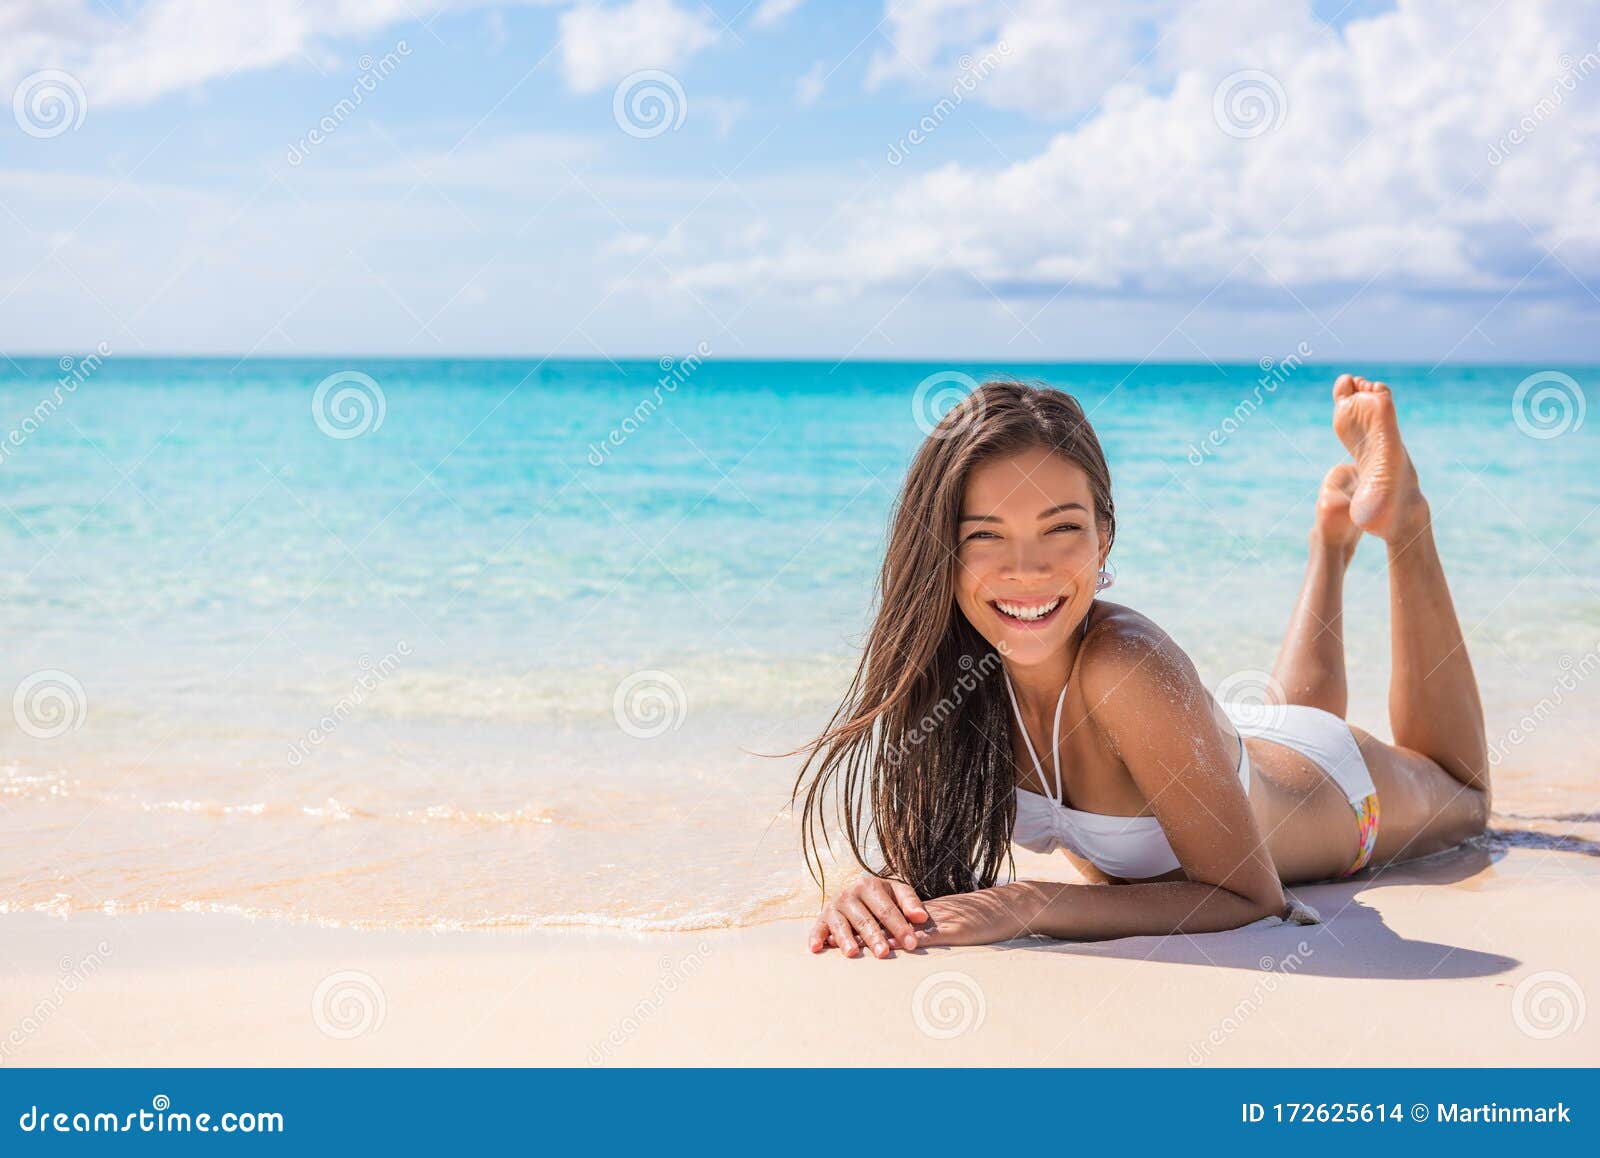 蓝海背景下，在天堂海滩热带旅行的白色沙滩上享受日光浴的亚洲比基尼  image